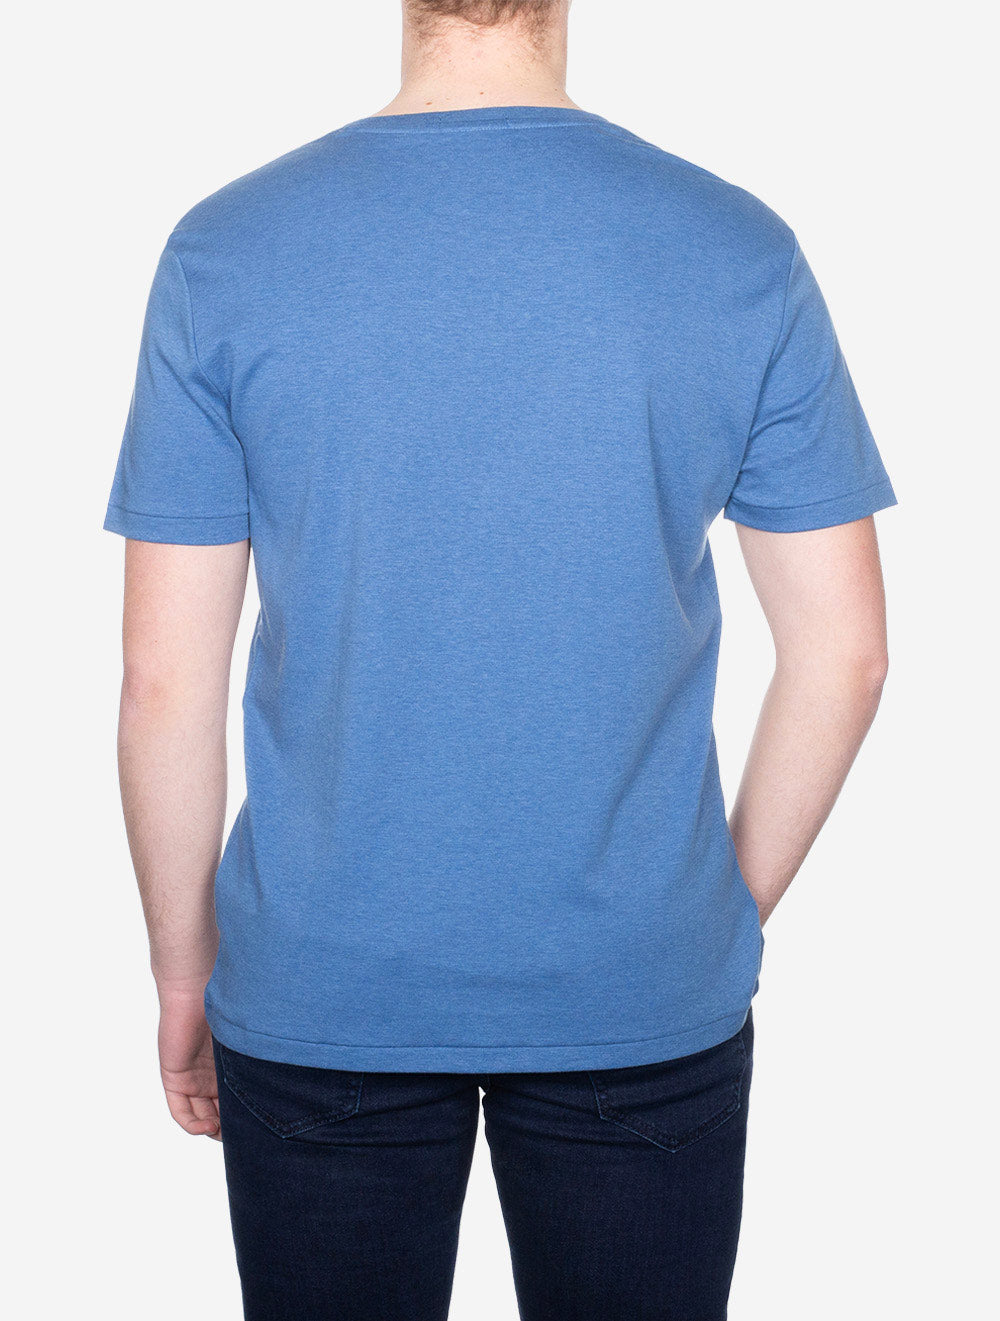 Pima Short Sleeve T-shirt Blue